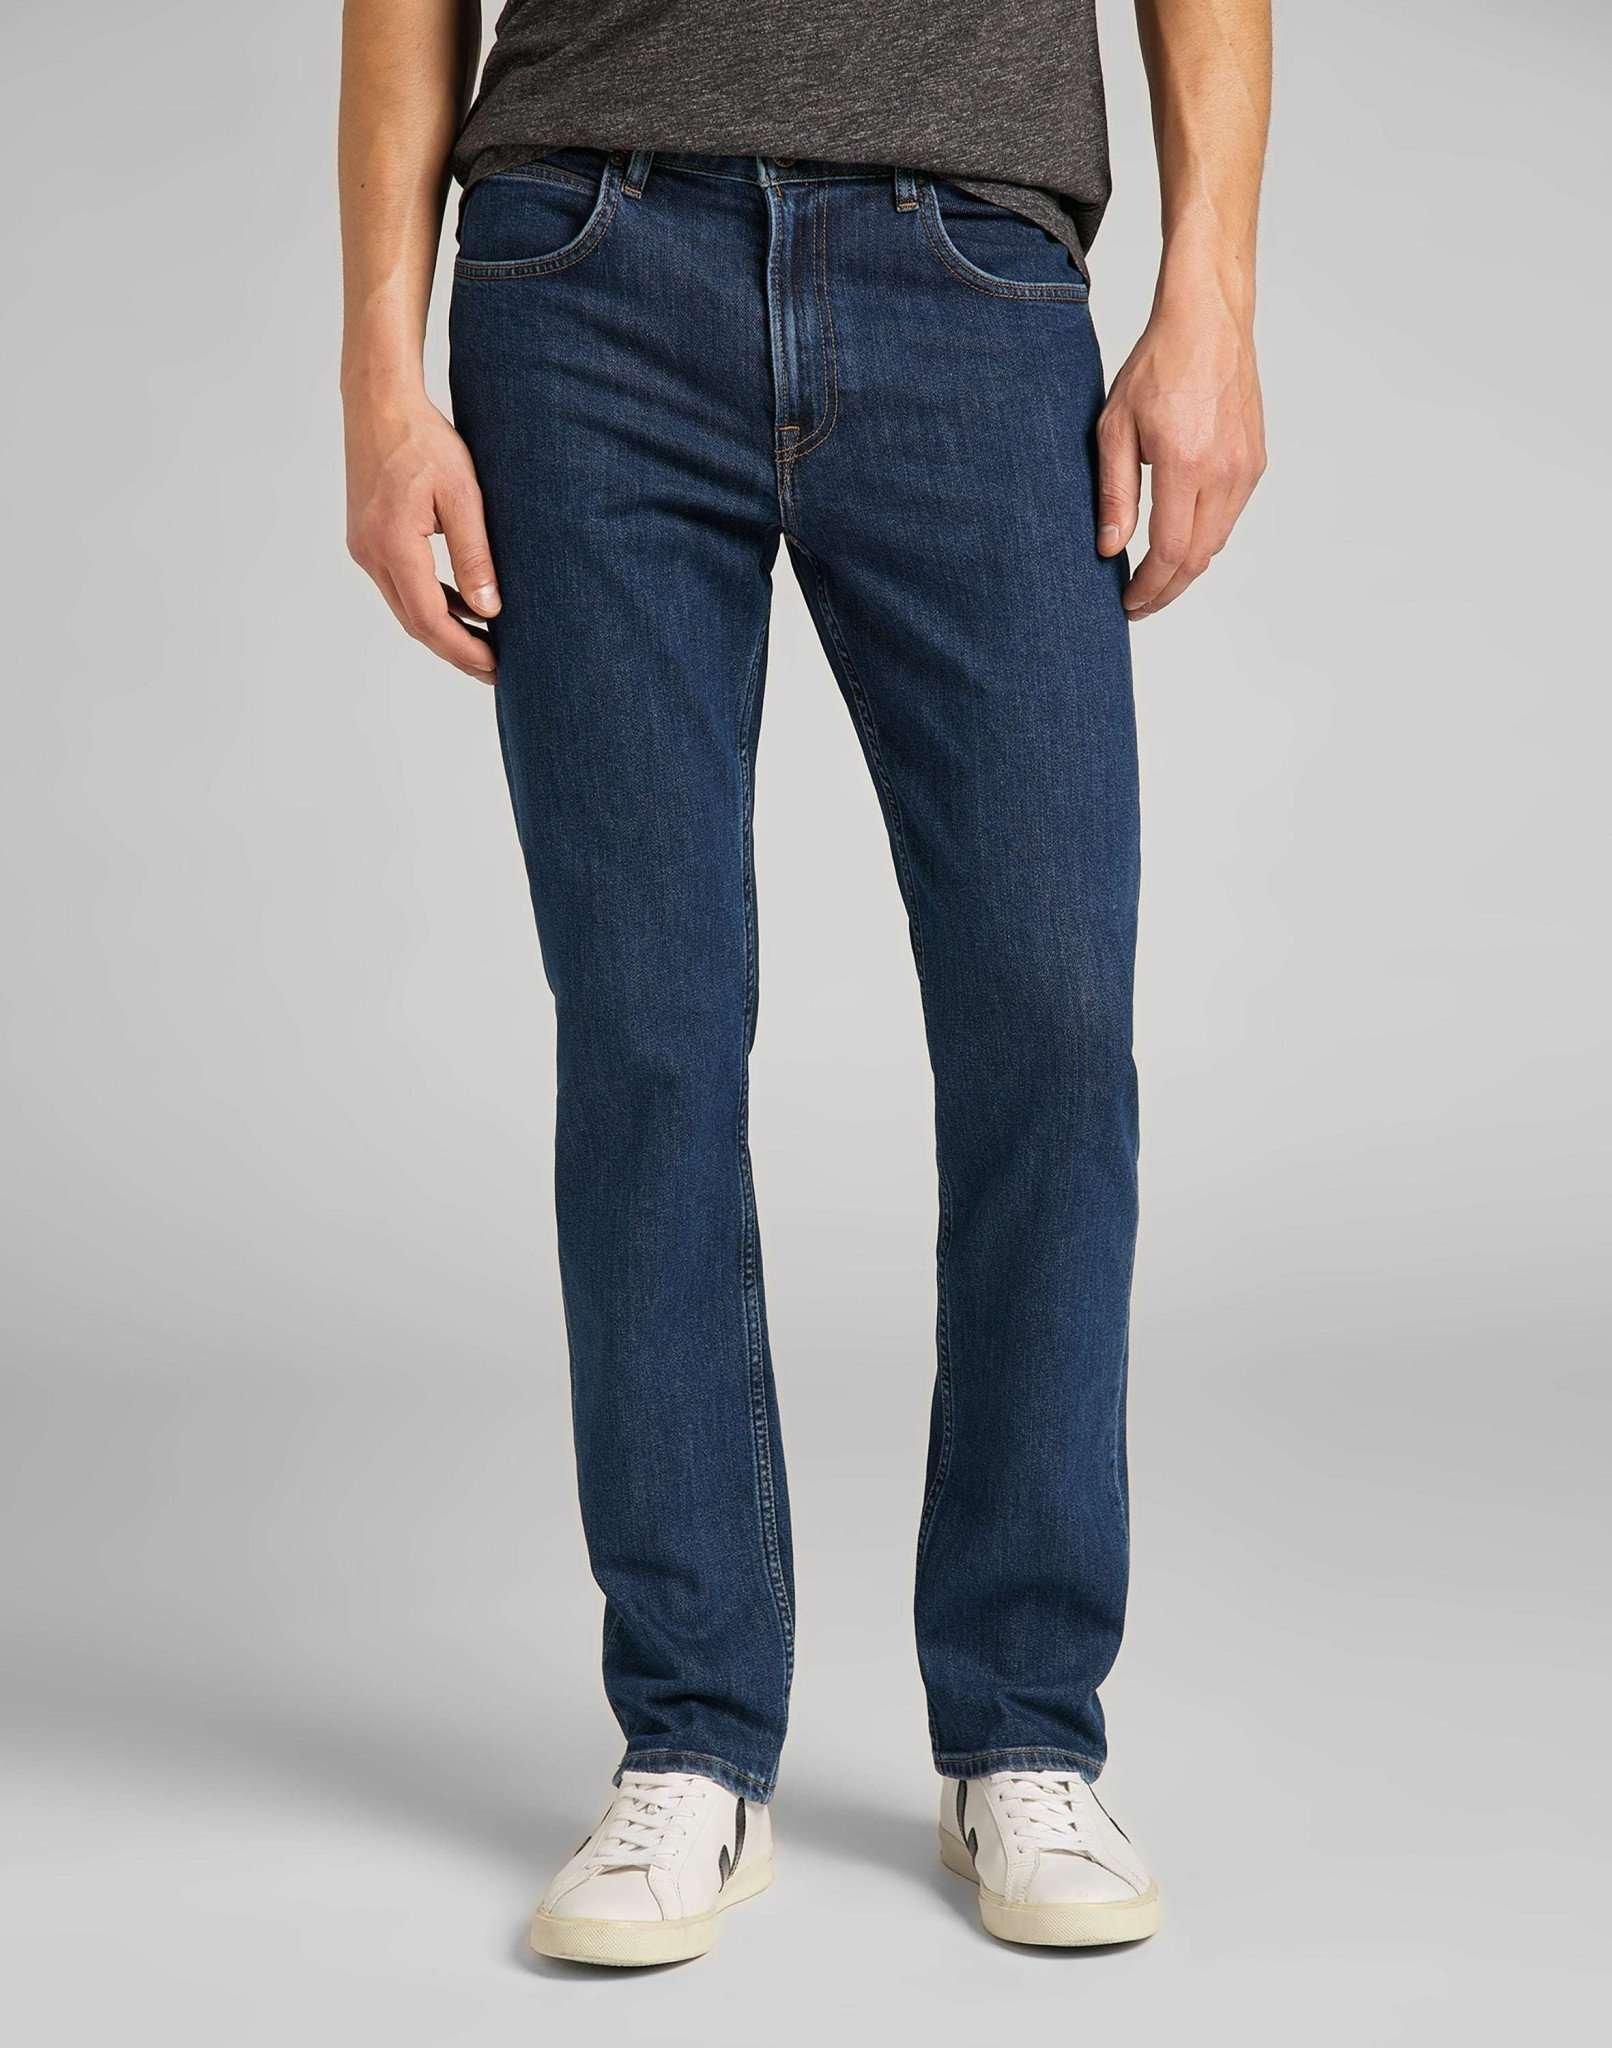 Jeans Straight Leg Brooklyn Herren Blau Denim L32/W36 von Lee